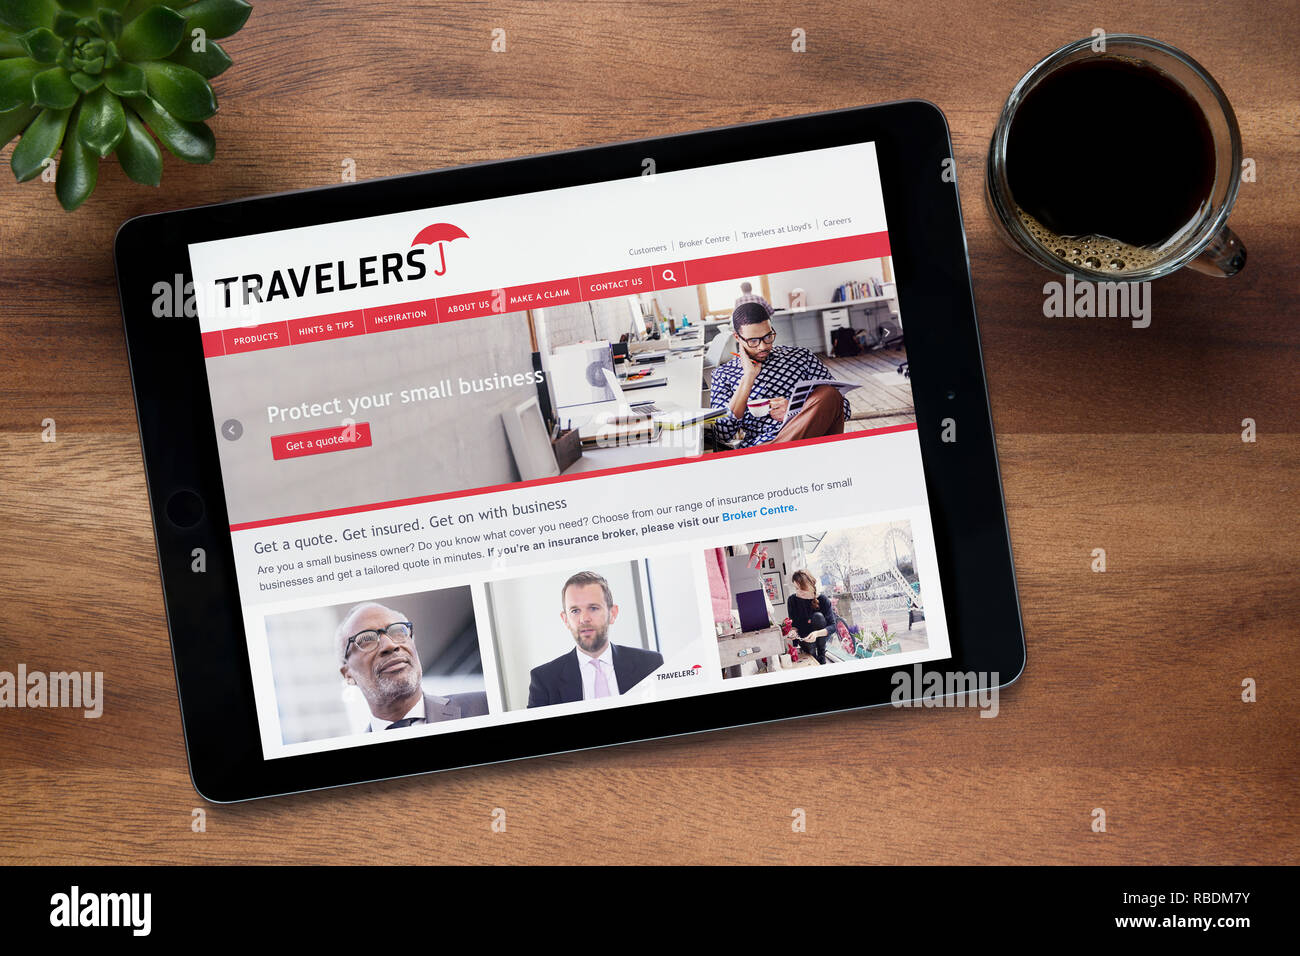 Le site web de l'assurance des voyageurs est vu sur un iPad tablet, reposant sur une table en bois (usage éditorial uniquement). Banque D'Images